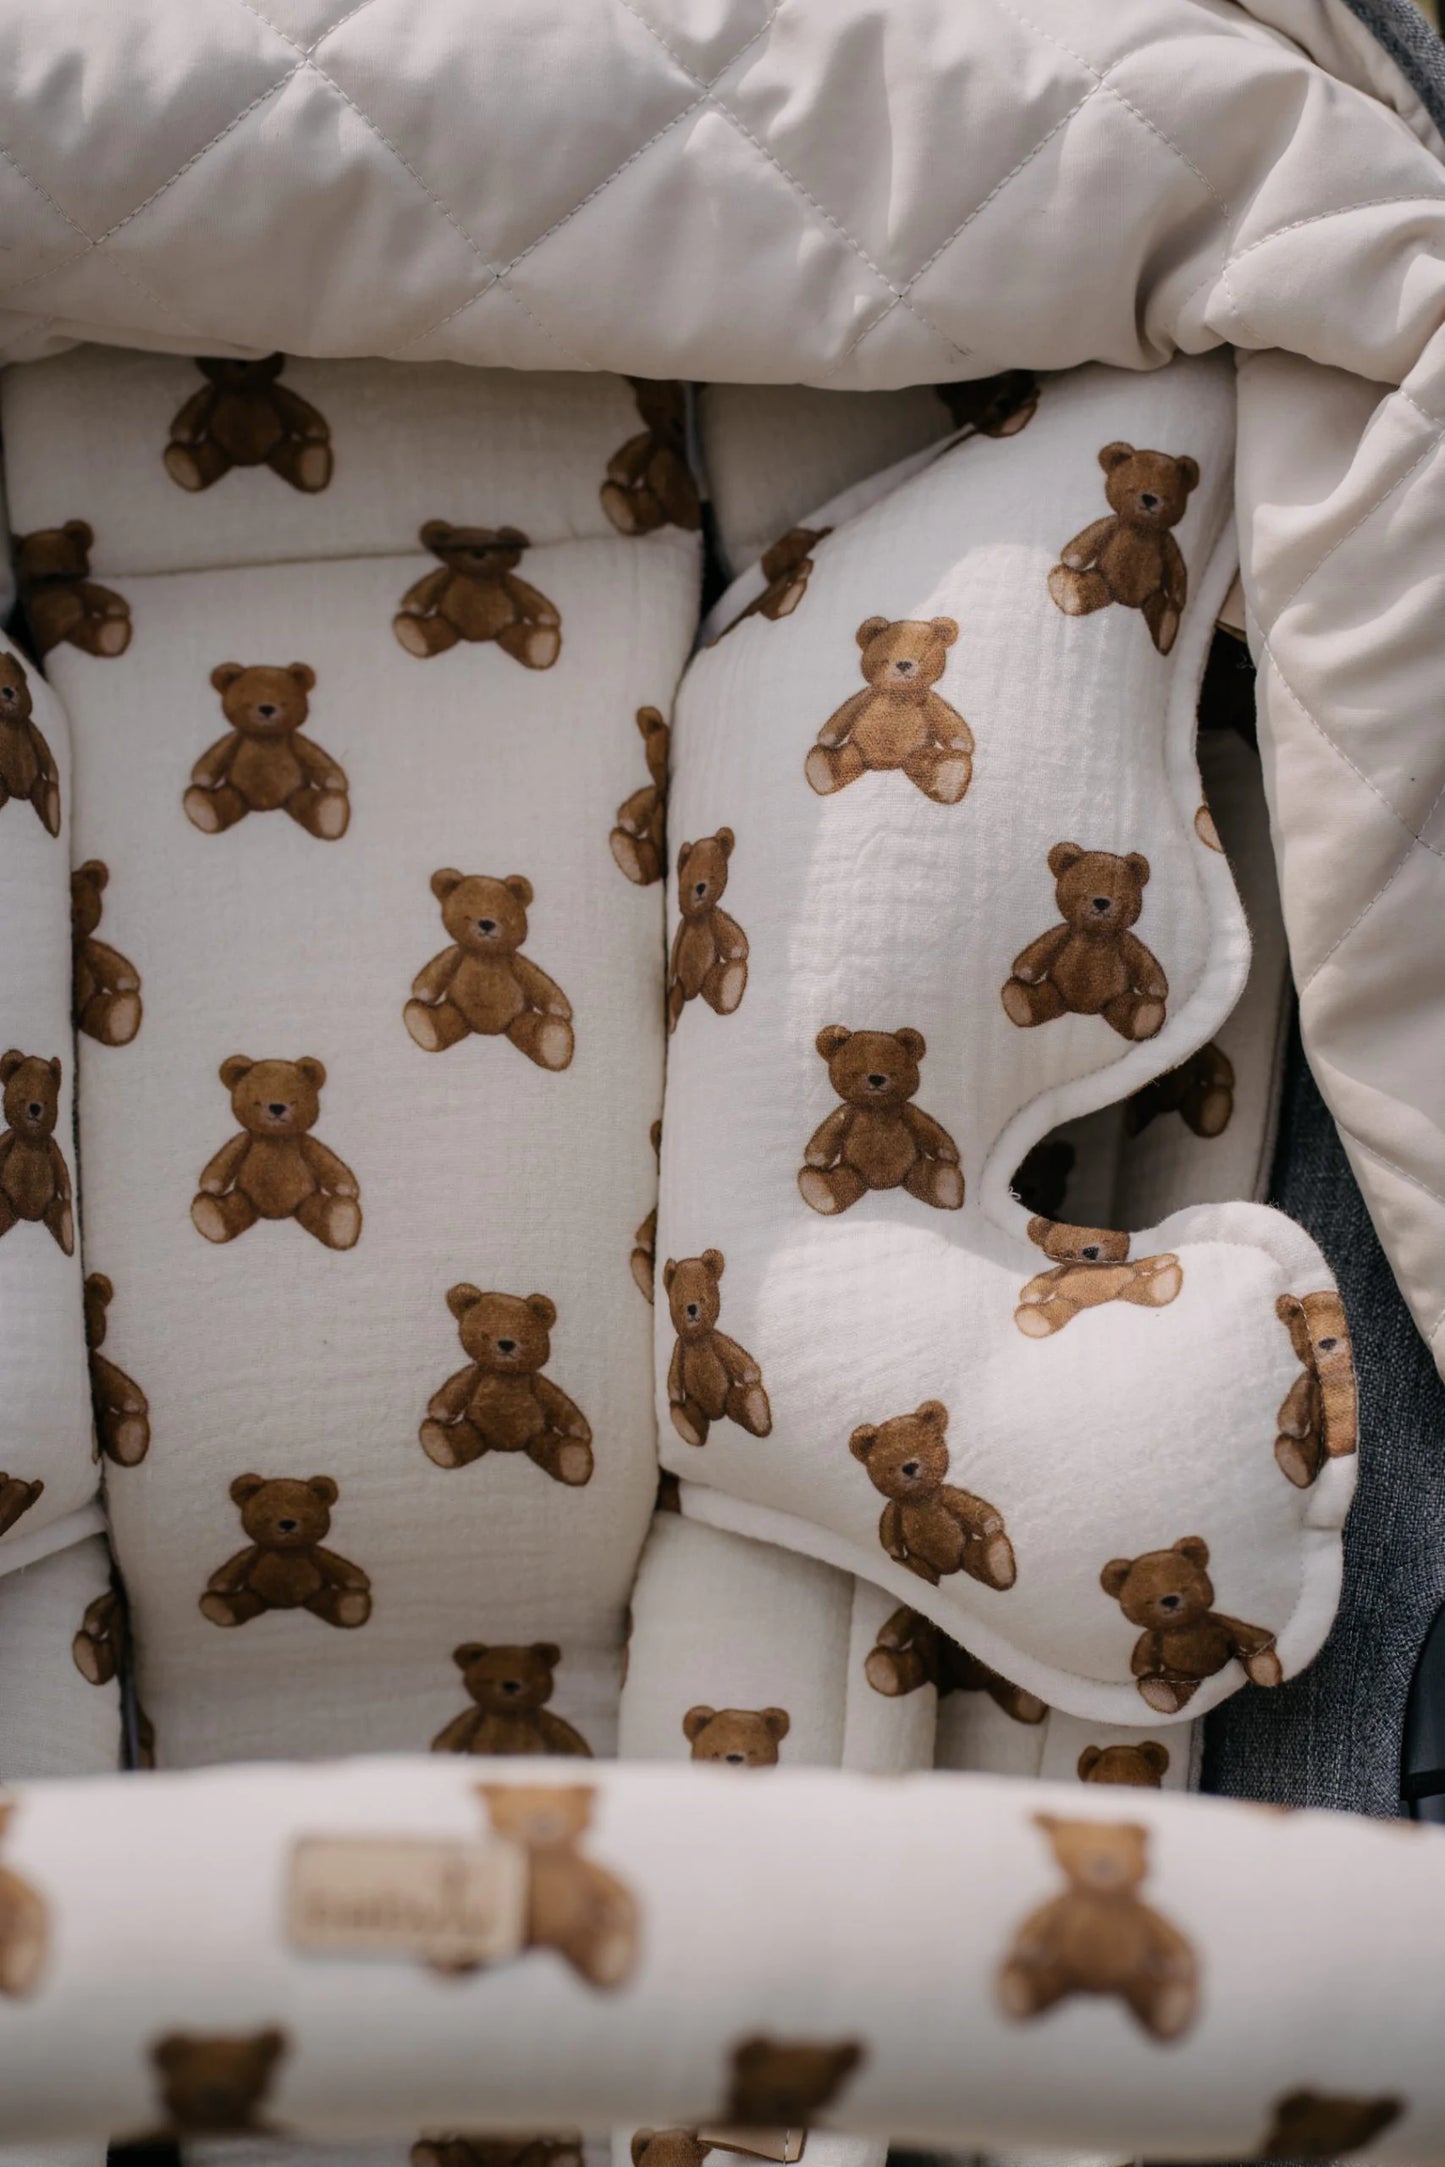 Wkładka do wózka spacerowego – Teddy bears